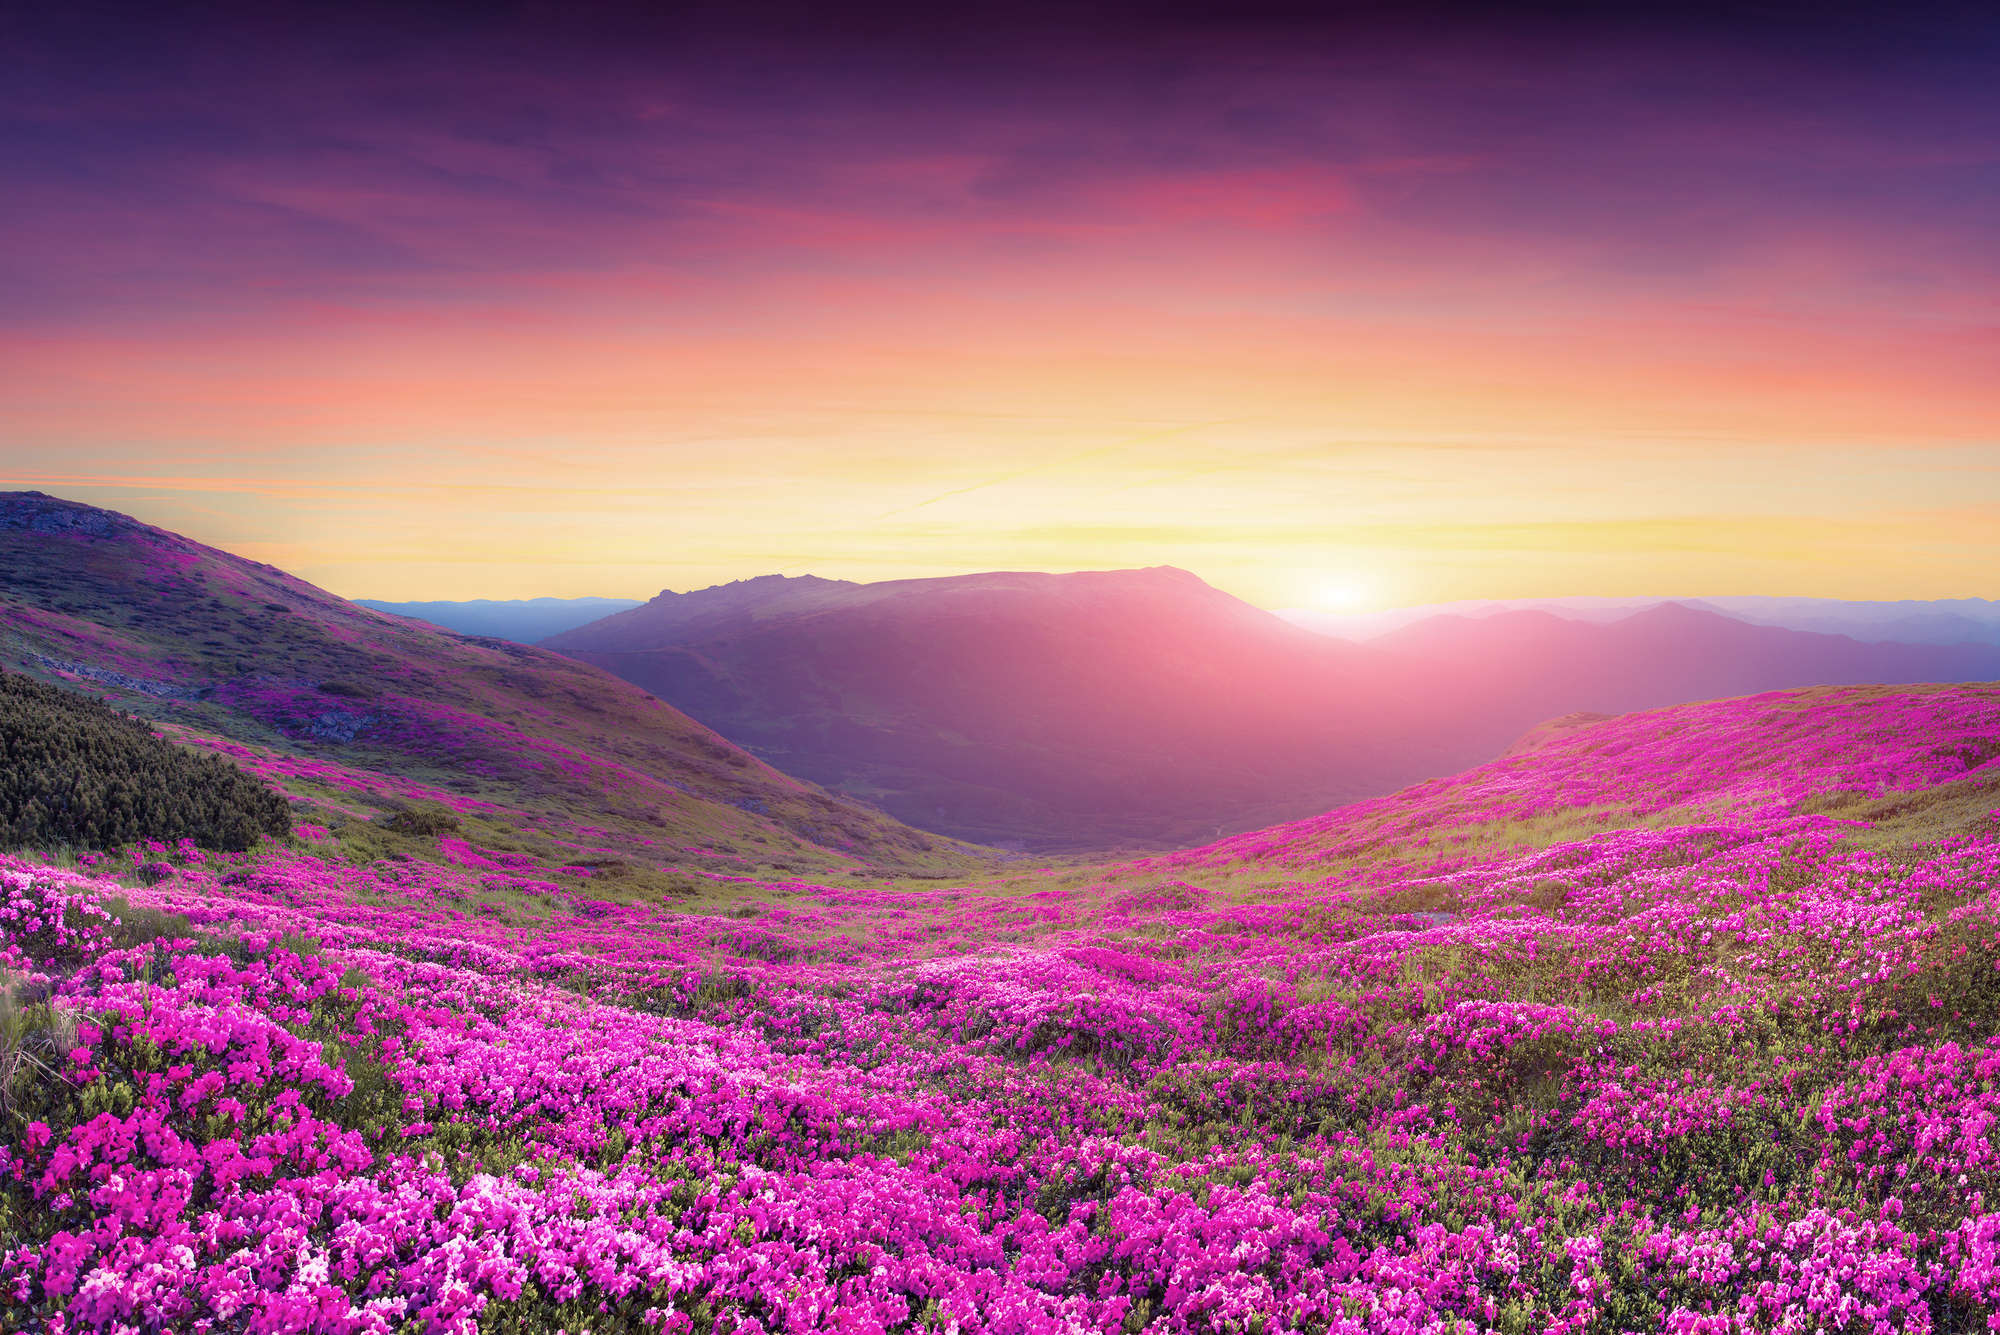             Natur Fototapete Blumenwiese in den Bergen auf Perlmutt Glattvlies
        